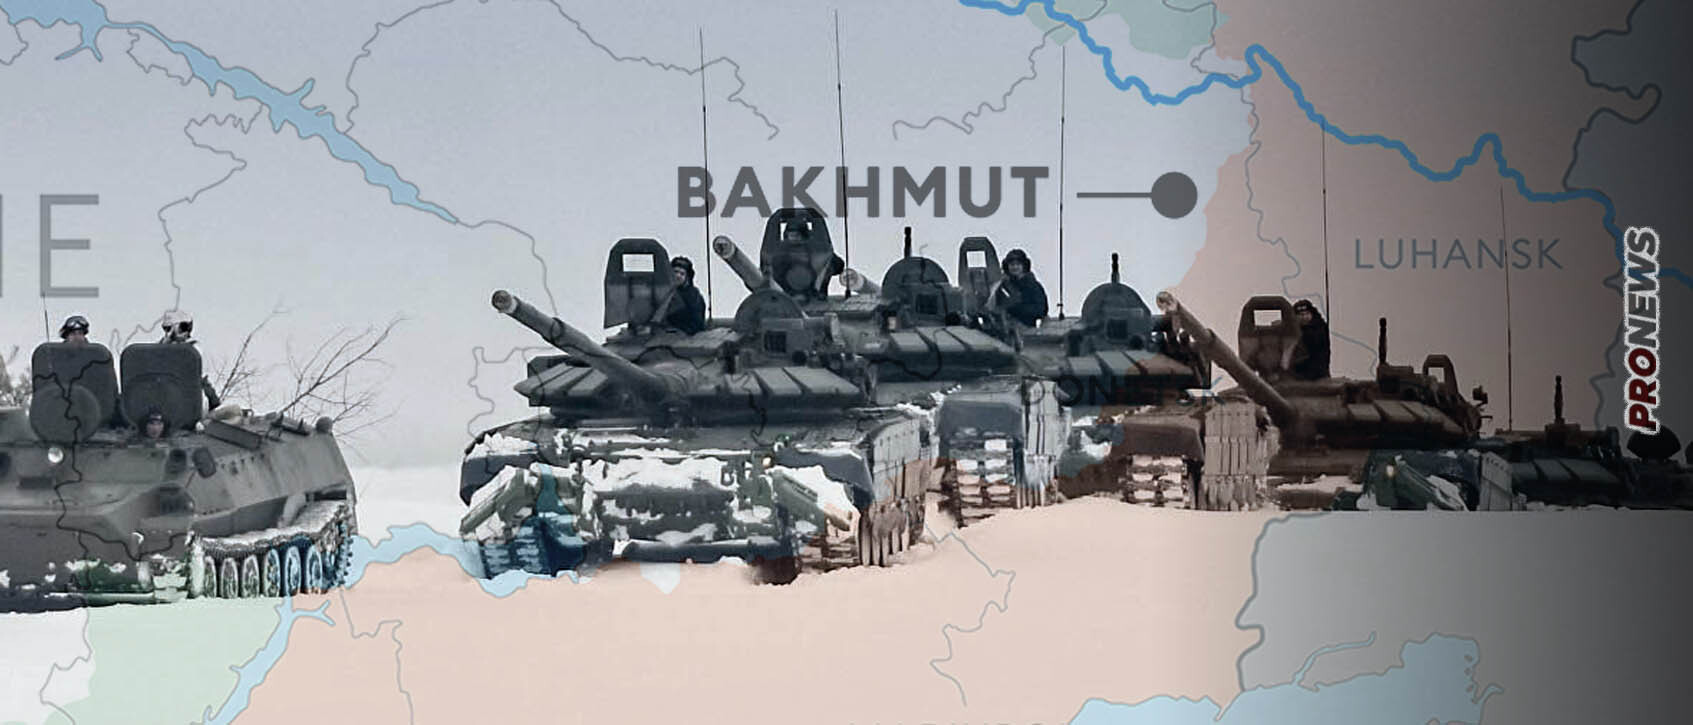 «Πήρε μπροστά» ο «σοβιετικός οδοστρωτήρας» στο Μπάκχμουτ – Μπαράζ ρουκετών και επέλαση δεκάδων αρμάτων μάχης (βίντεο)